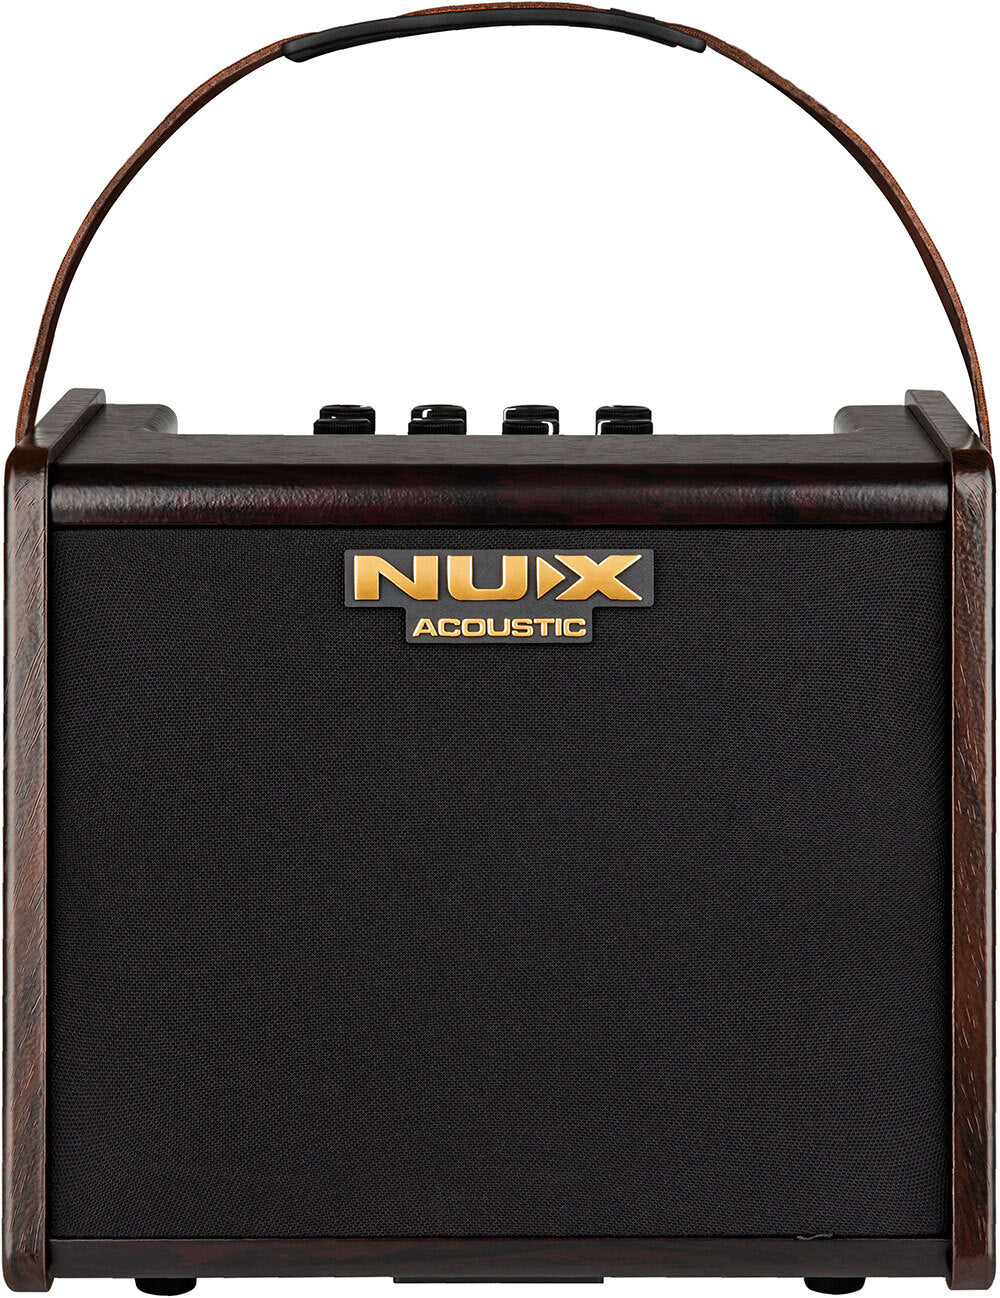 NUX Acoustic Amp 25w